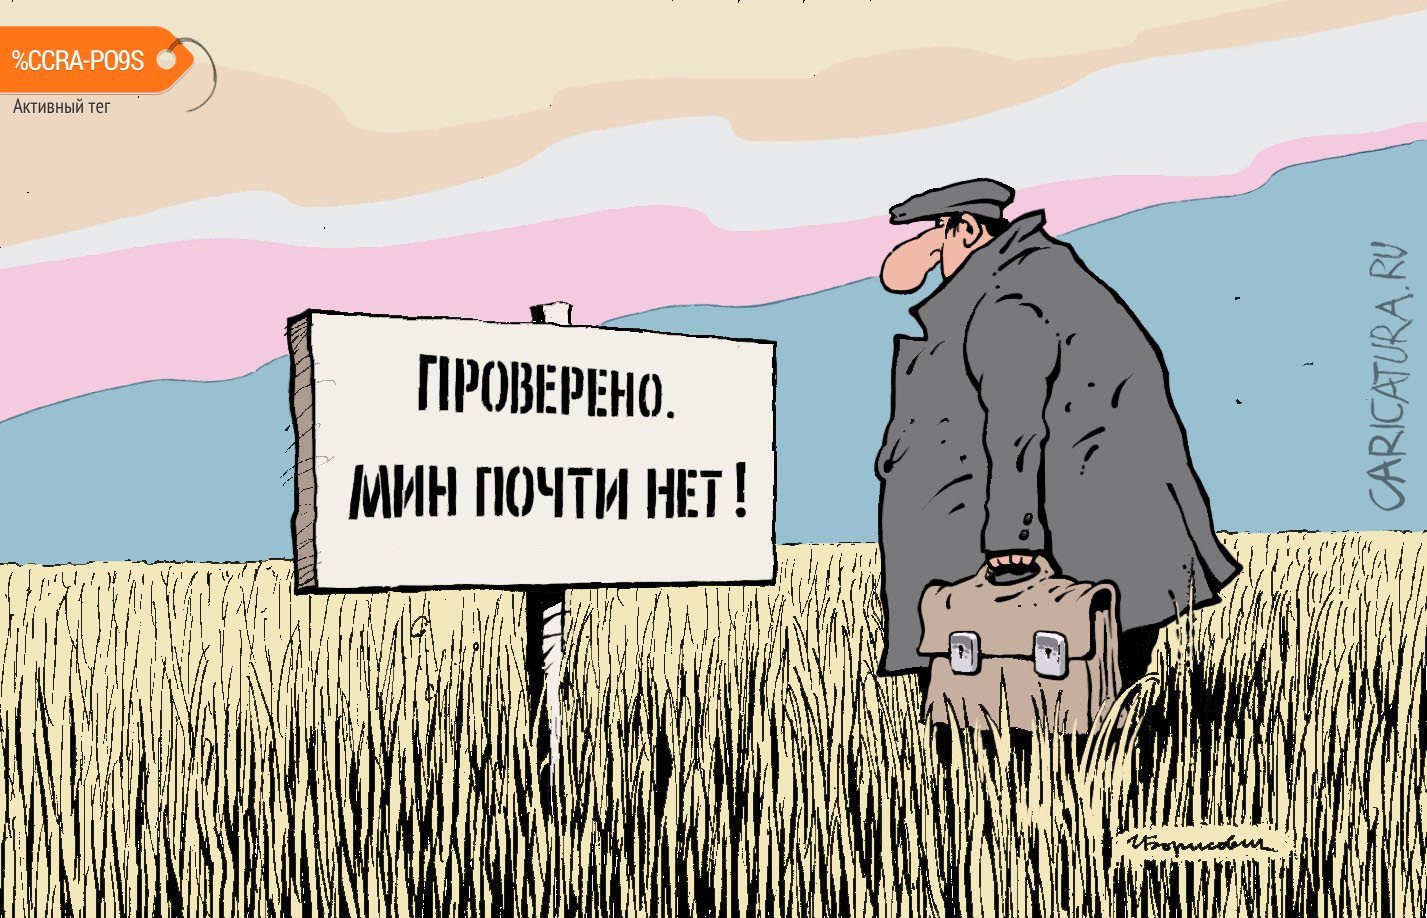 Карикатура "Мин нет!", Игорь Елистратов